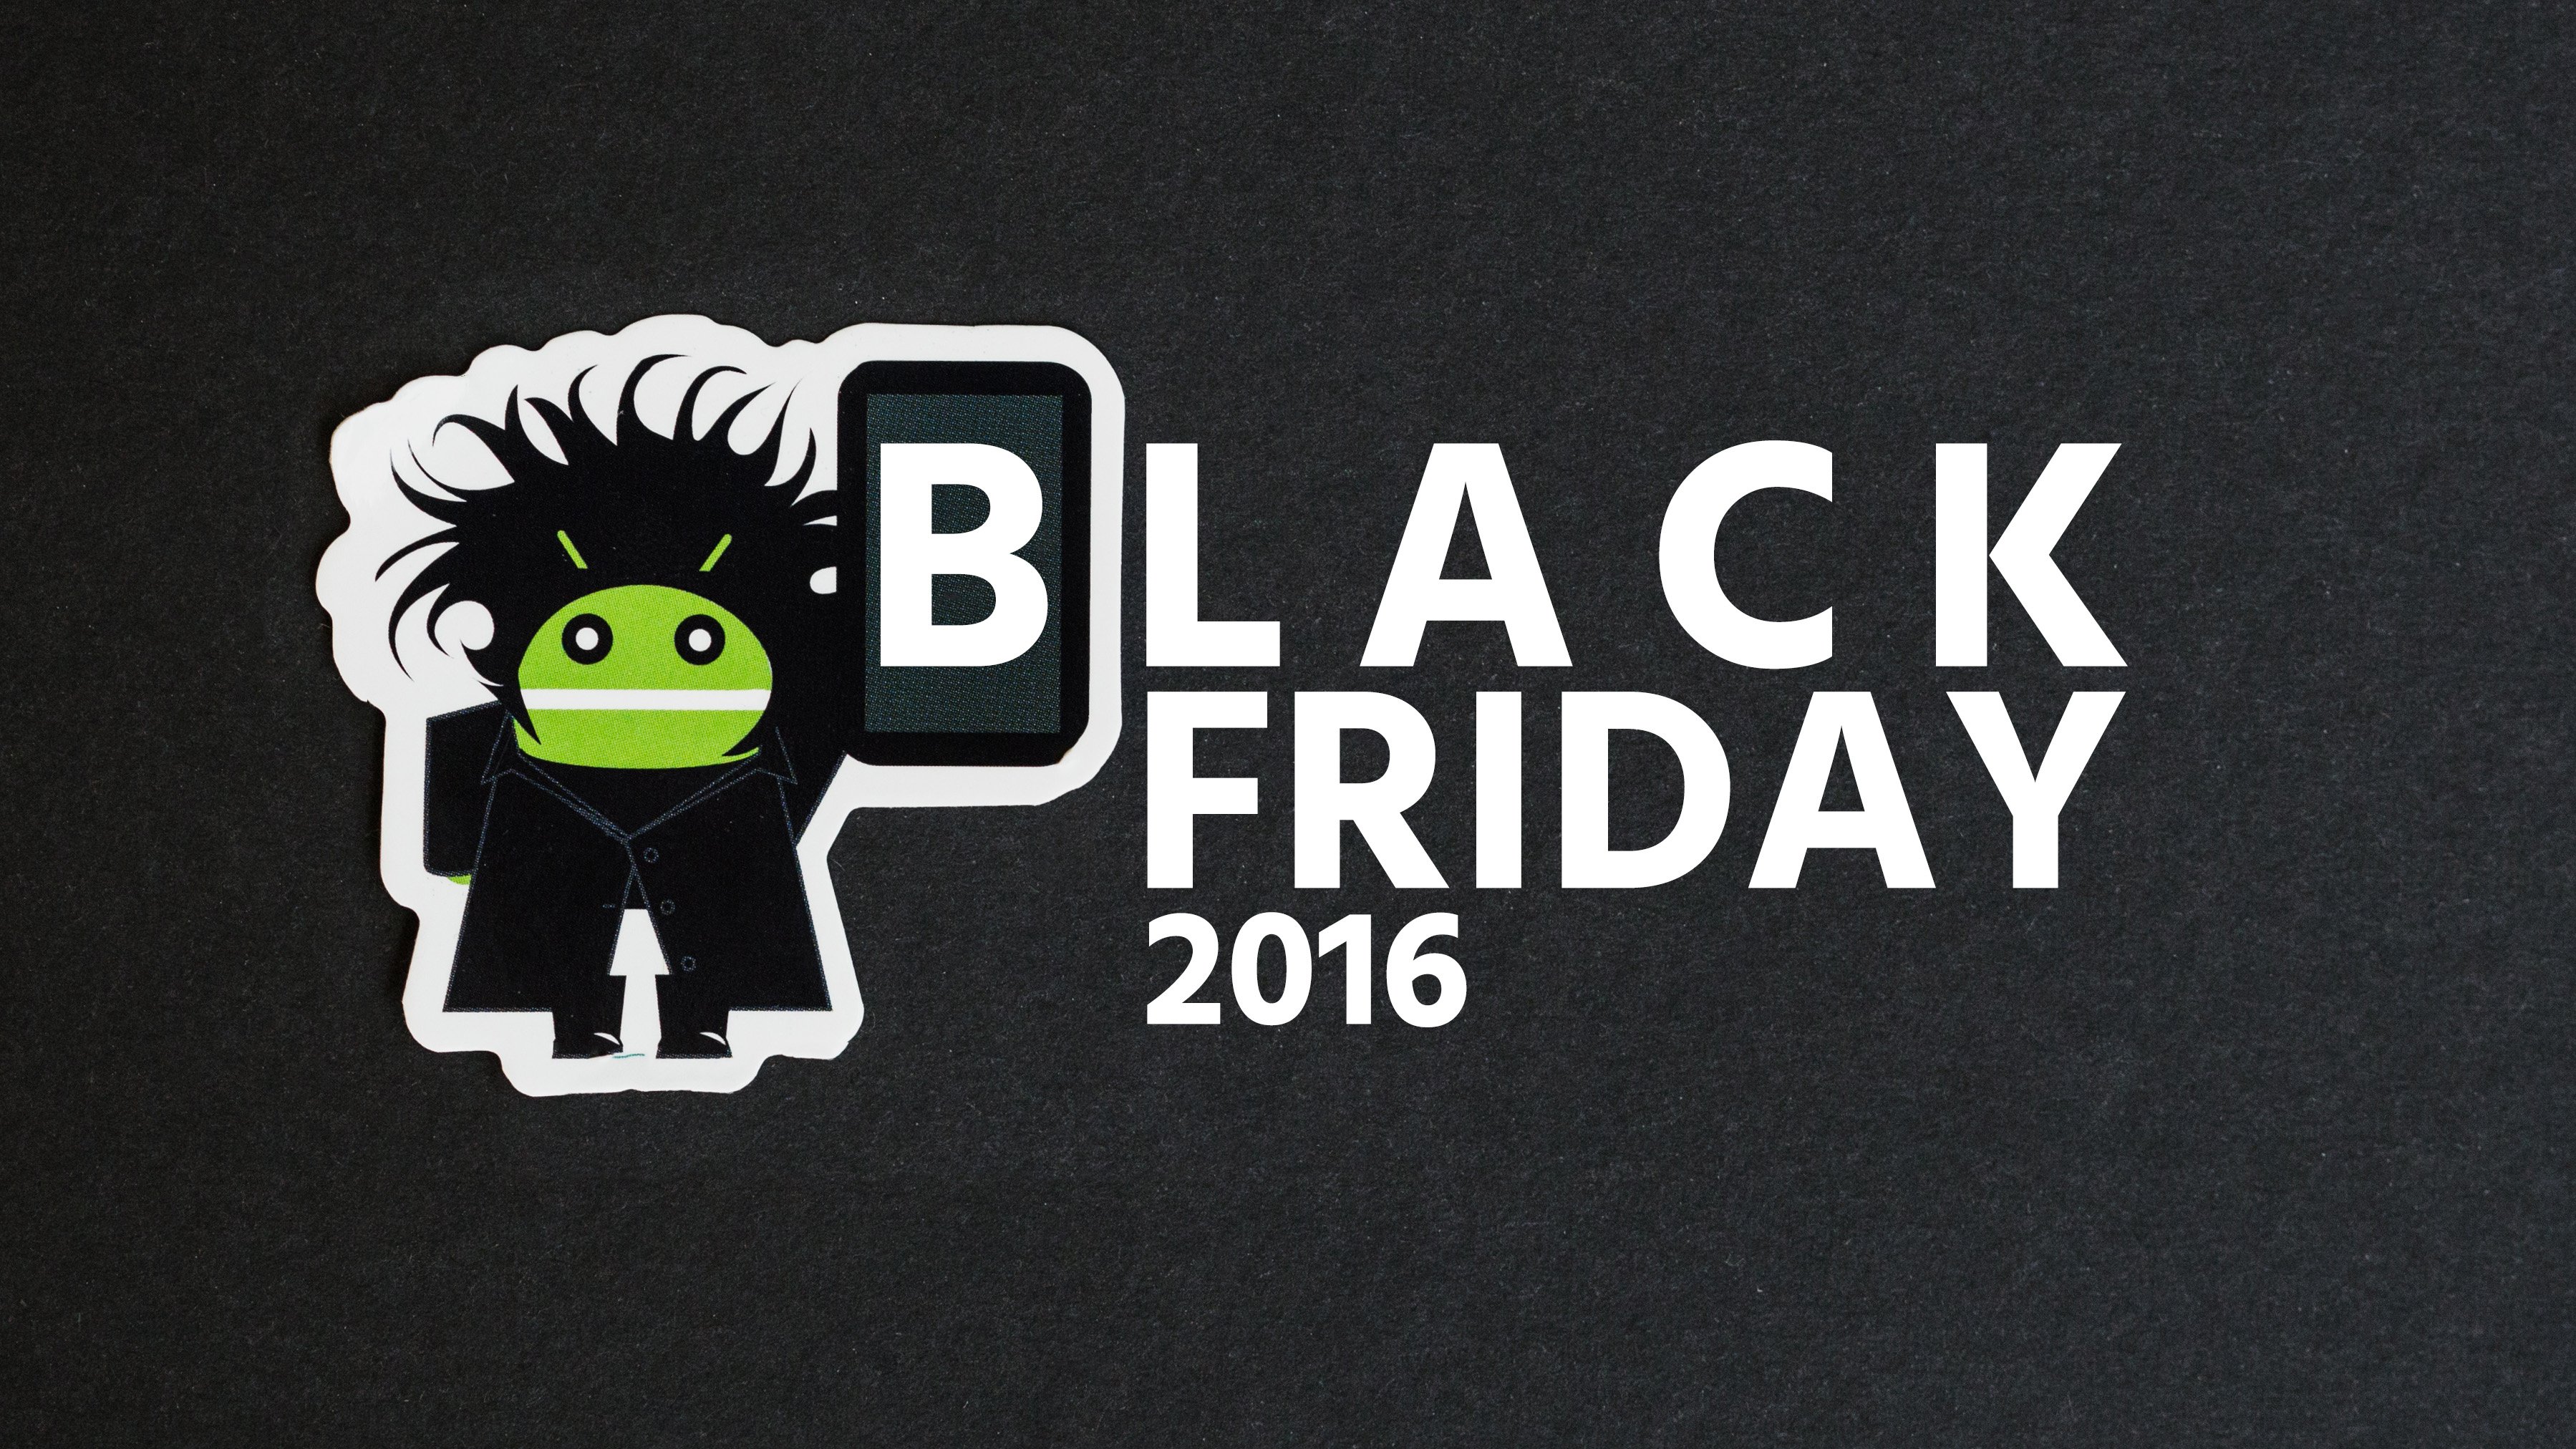 Black Friday 2016: melhores ofertas e descontos do momento - AndroidPIT